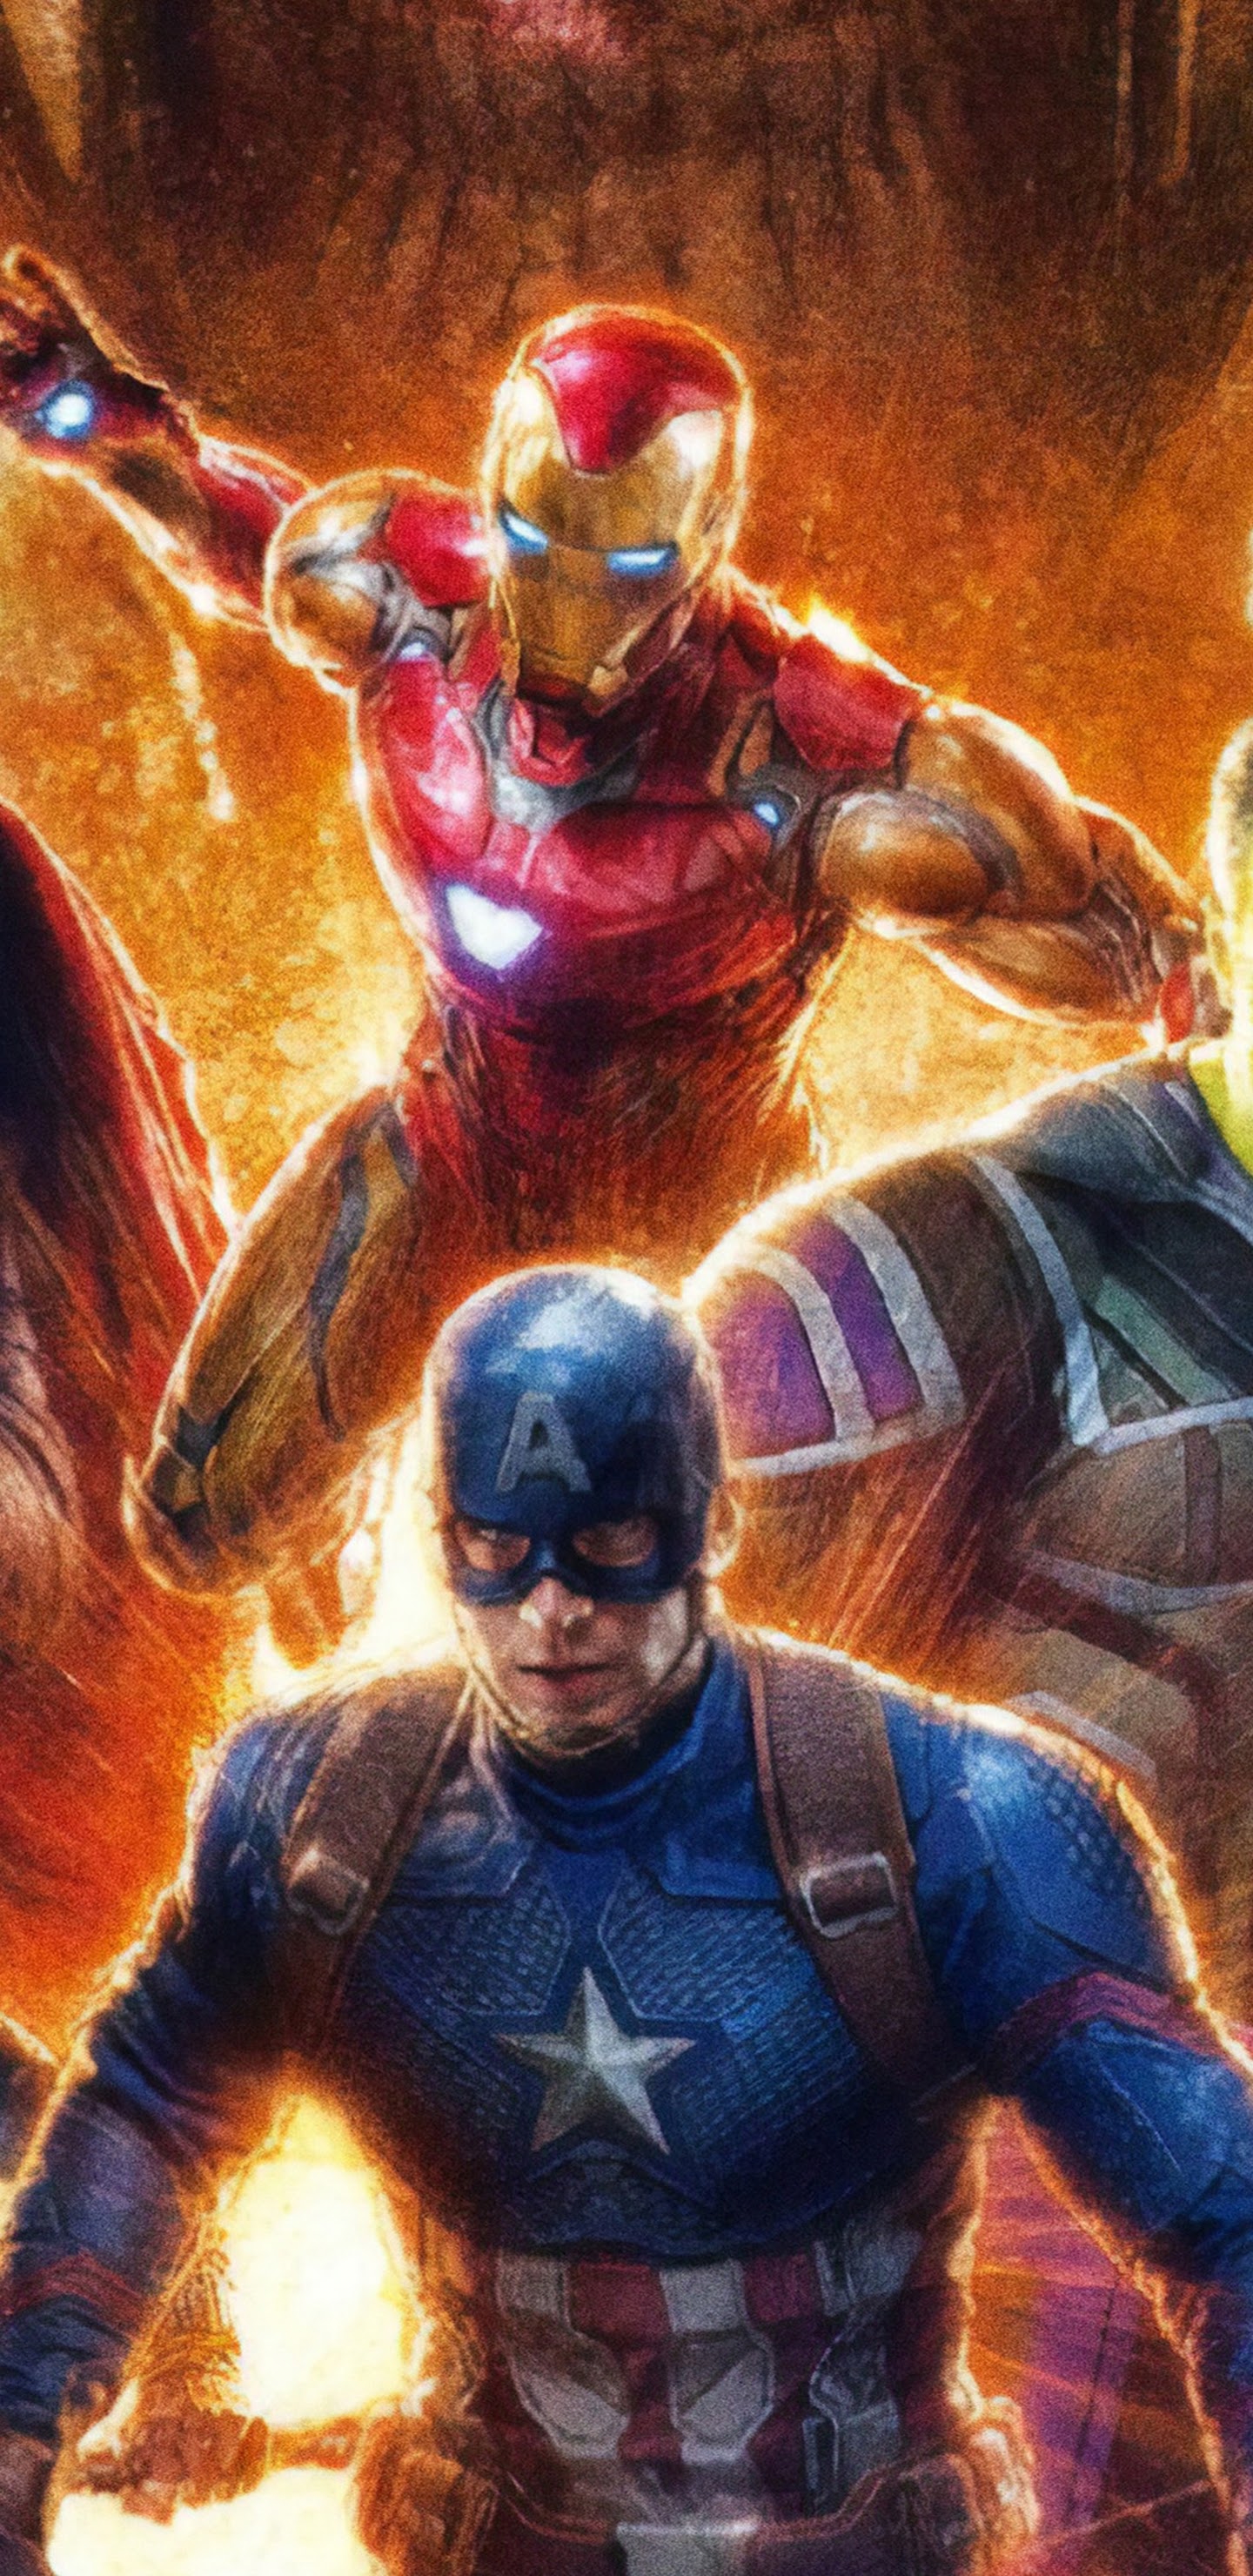 Avengers Endgame Iron Man Captain America 4k Wallpaper 112